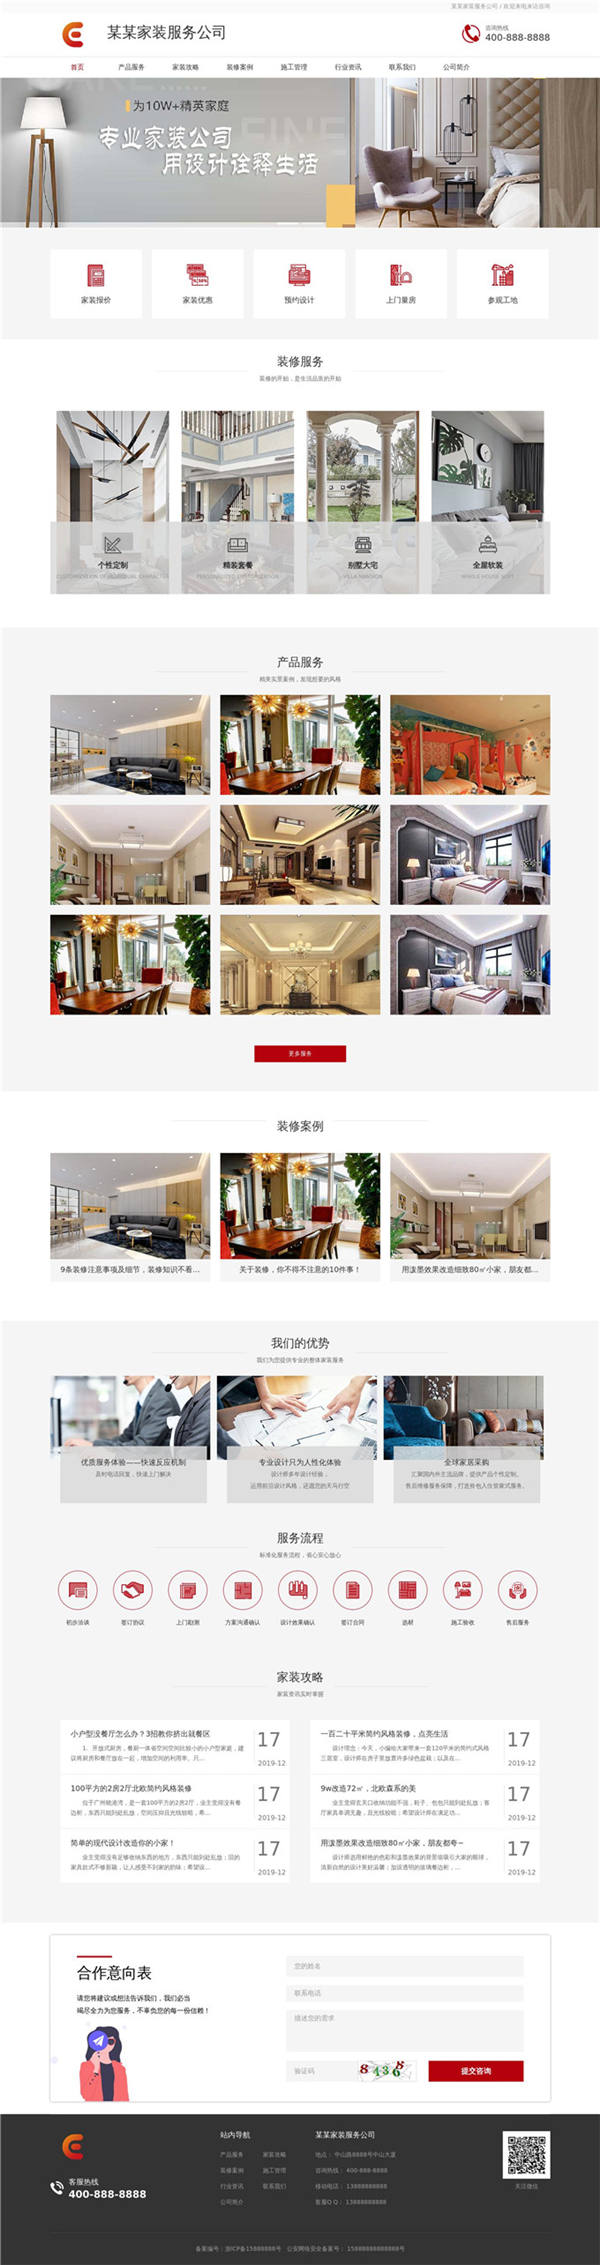 家庭装修装饰家装服务公司网站模板展示图